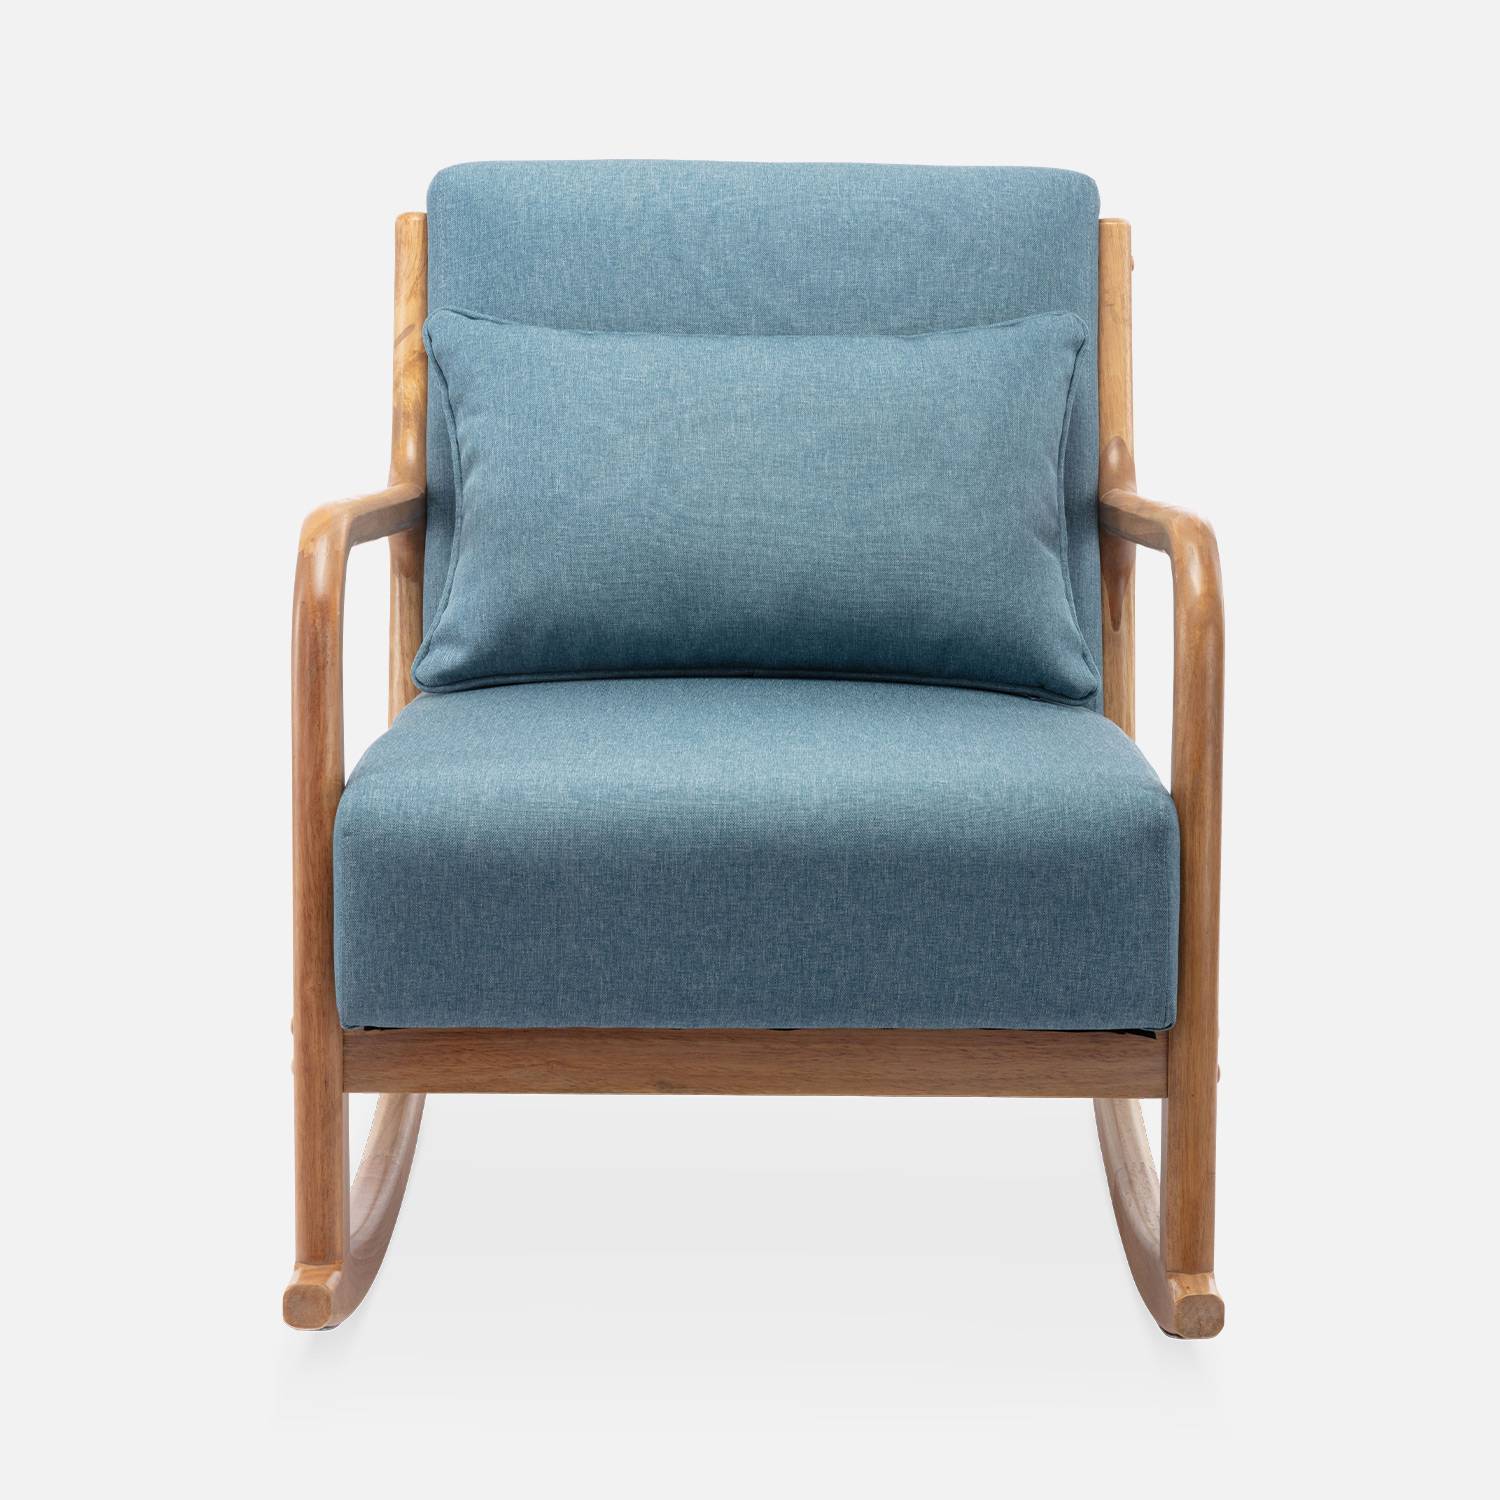 Fauteuil à bascule design en bois et tissu, 1 place, rocking chair scandinave, bleu Photo4